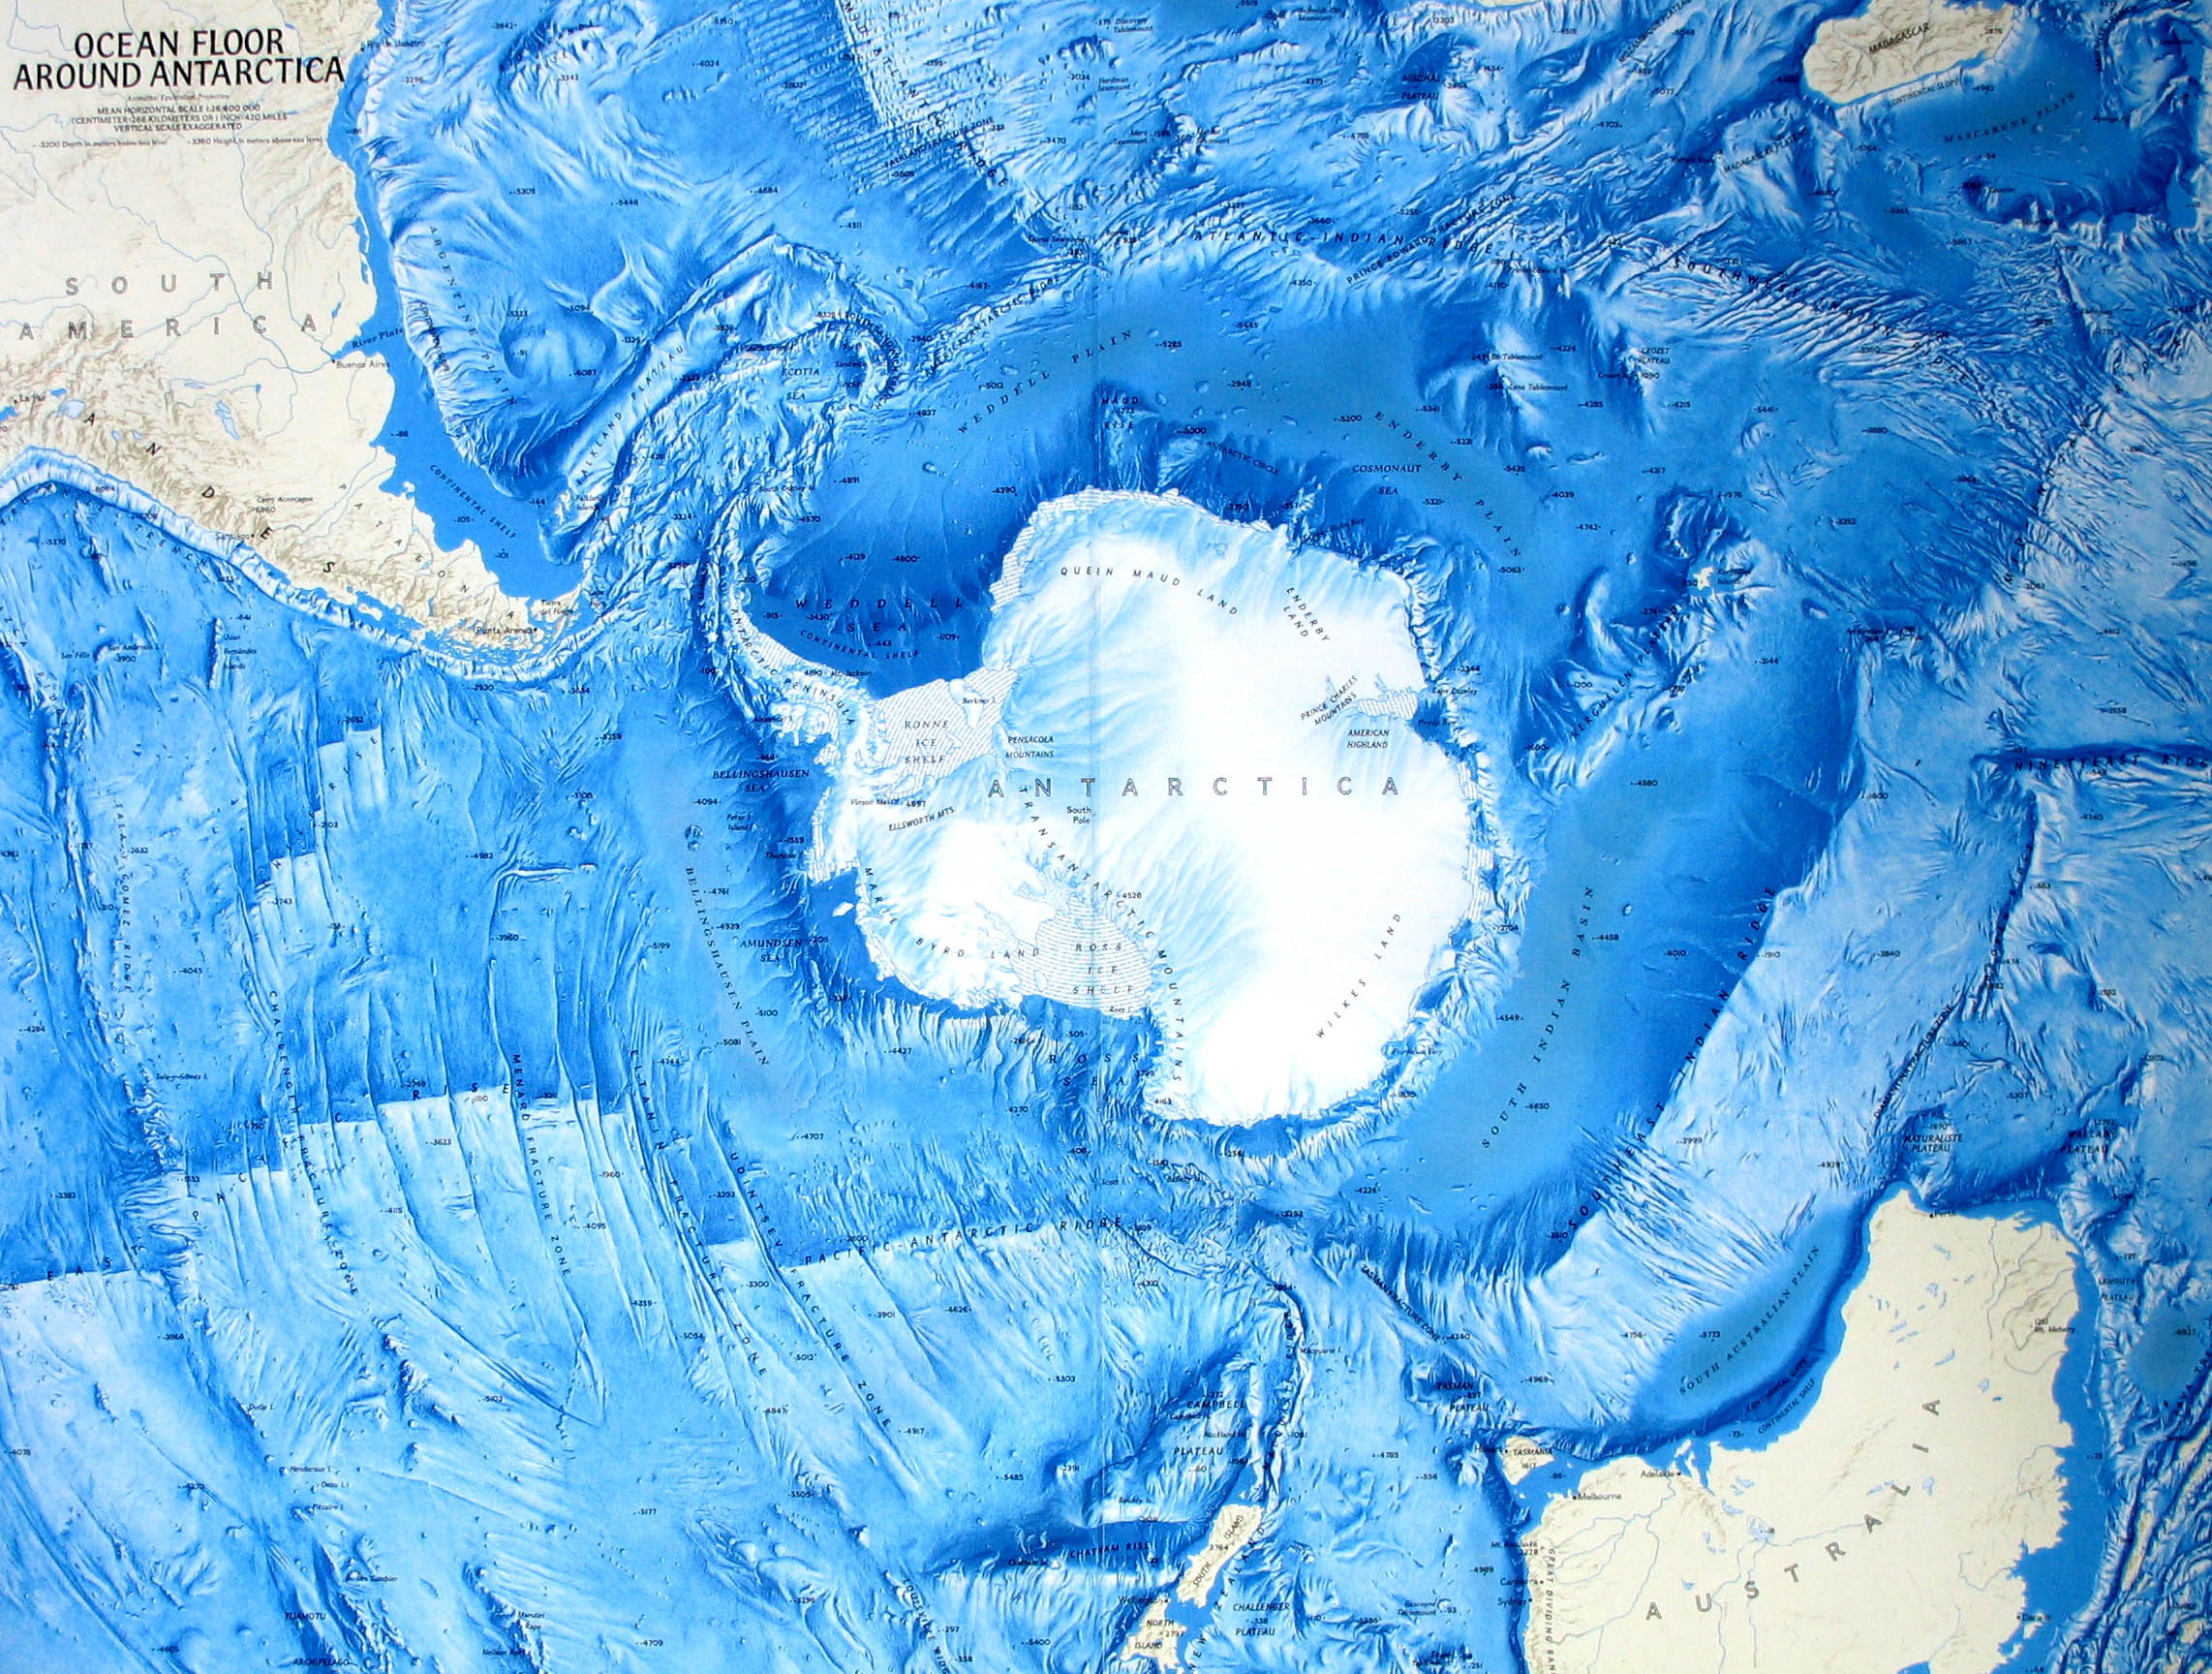 Стена в тихом океане. Карта дна Северного Ледовитого океана. Рельеф дна Южного океана. Рельеф дна Северного Ледовитого океана. Антарктида (материк).